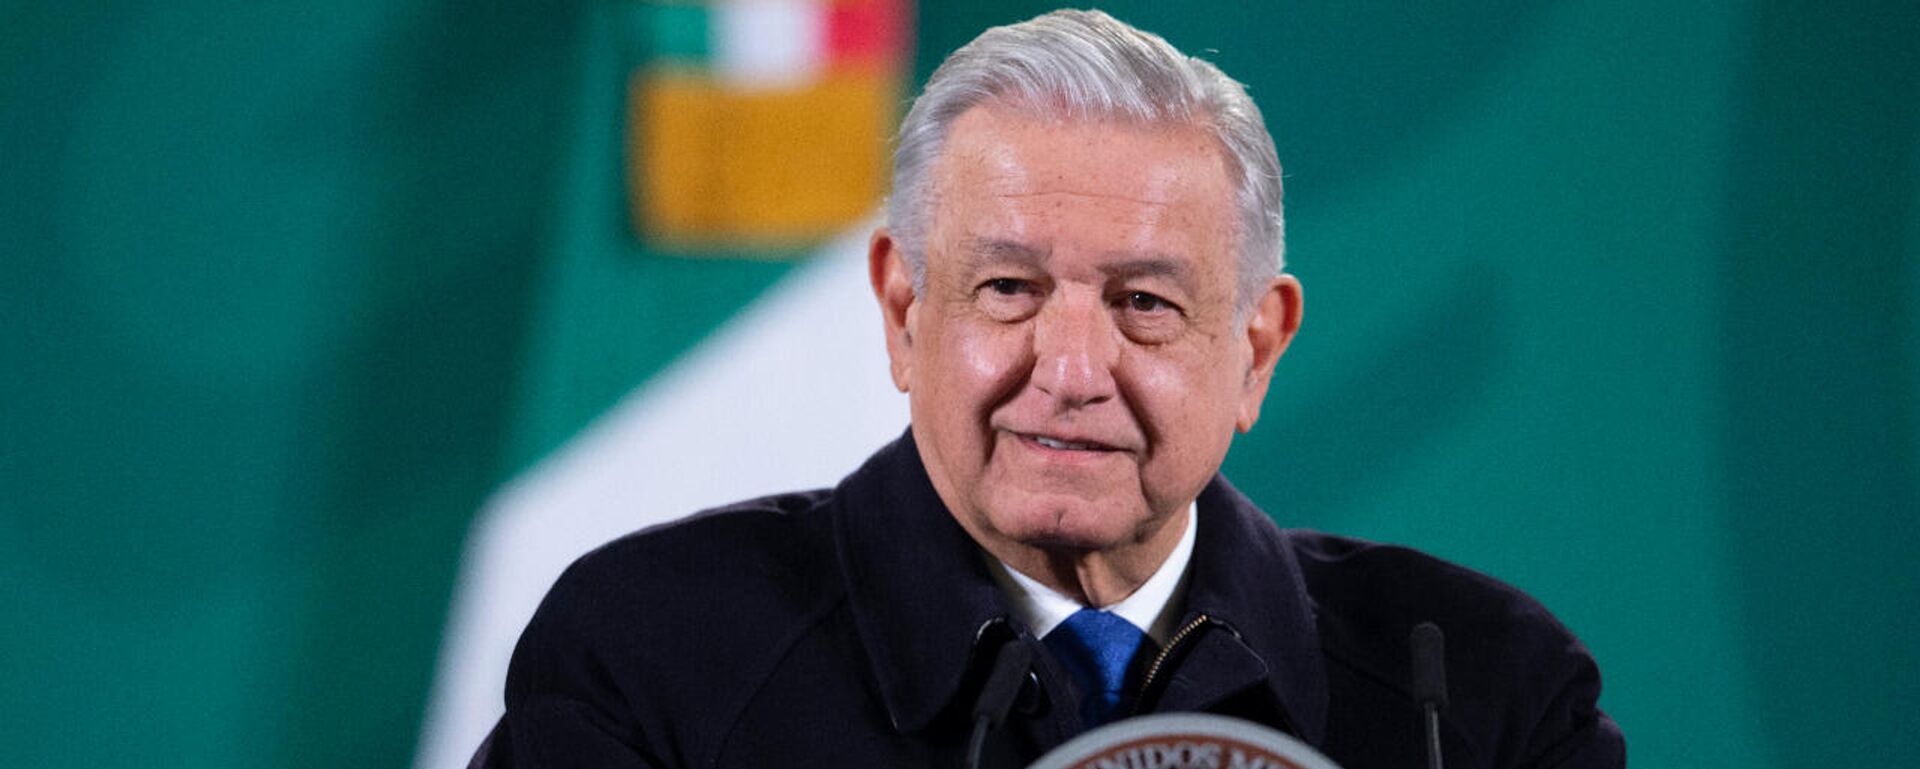 Andrés Manuel López Obrador, presidente de México - Sputnik Mundo, 1920, 22.11.2021